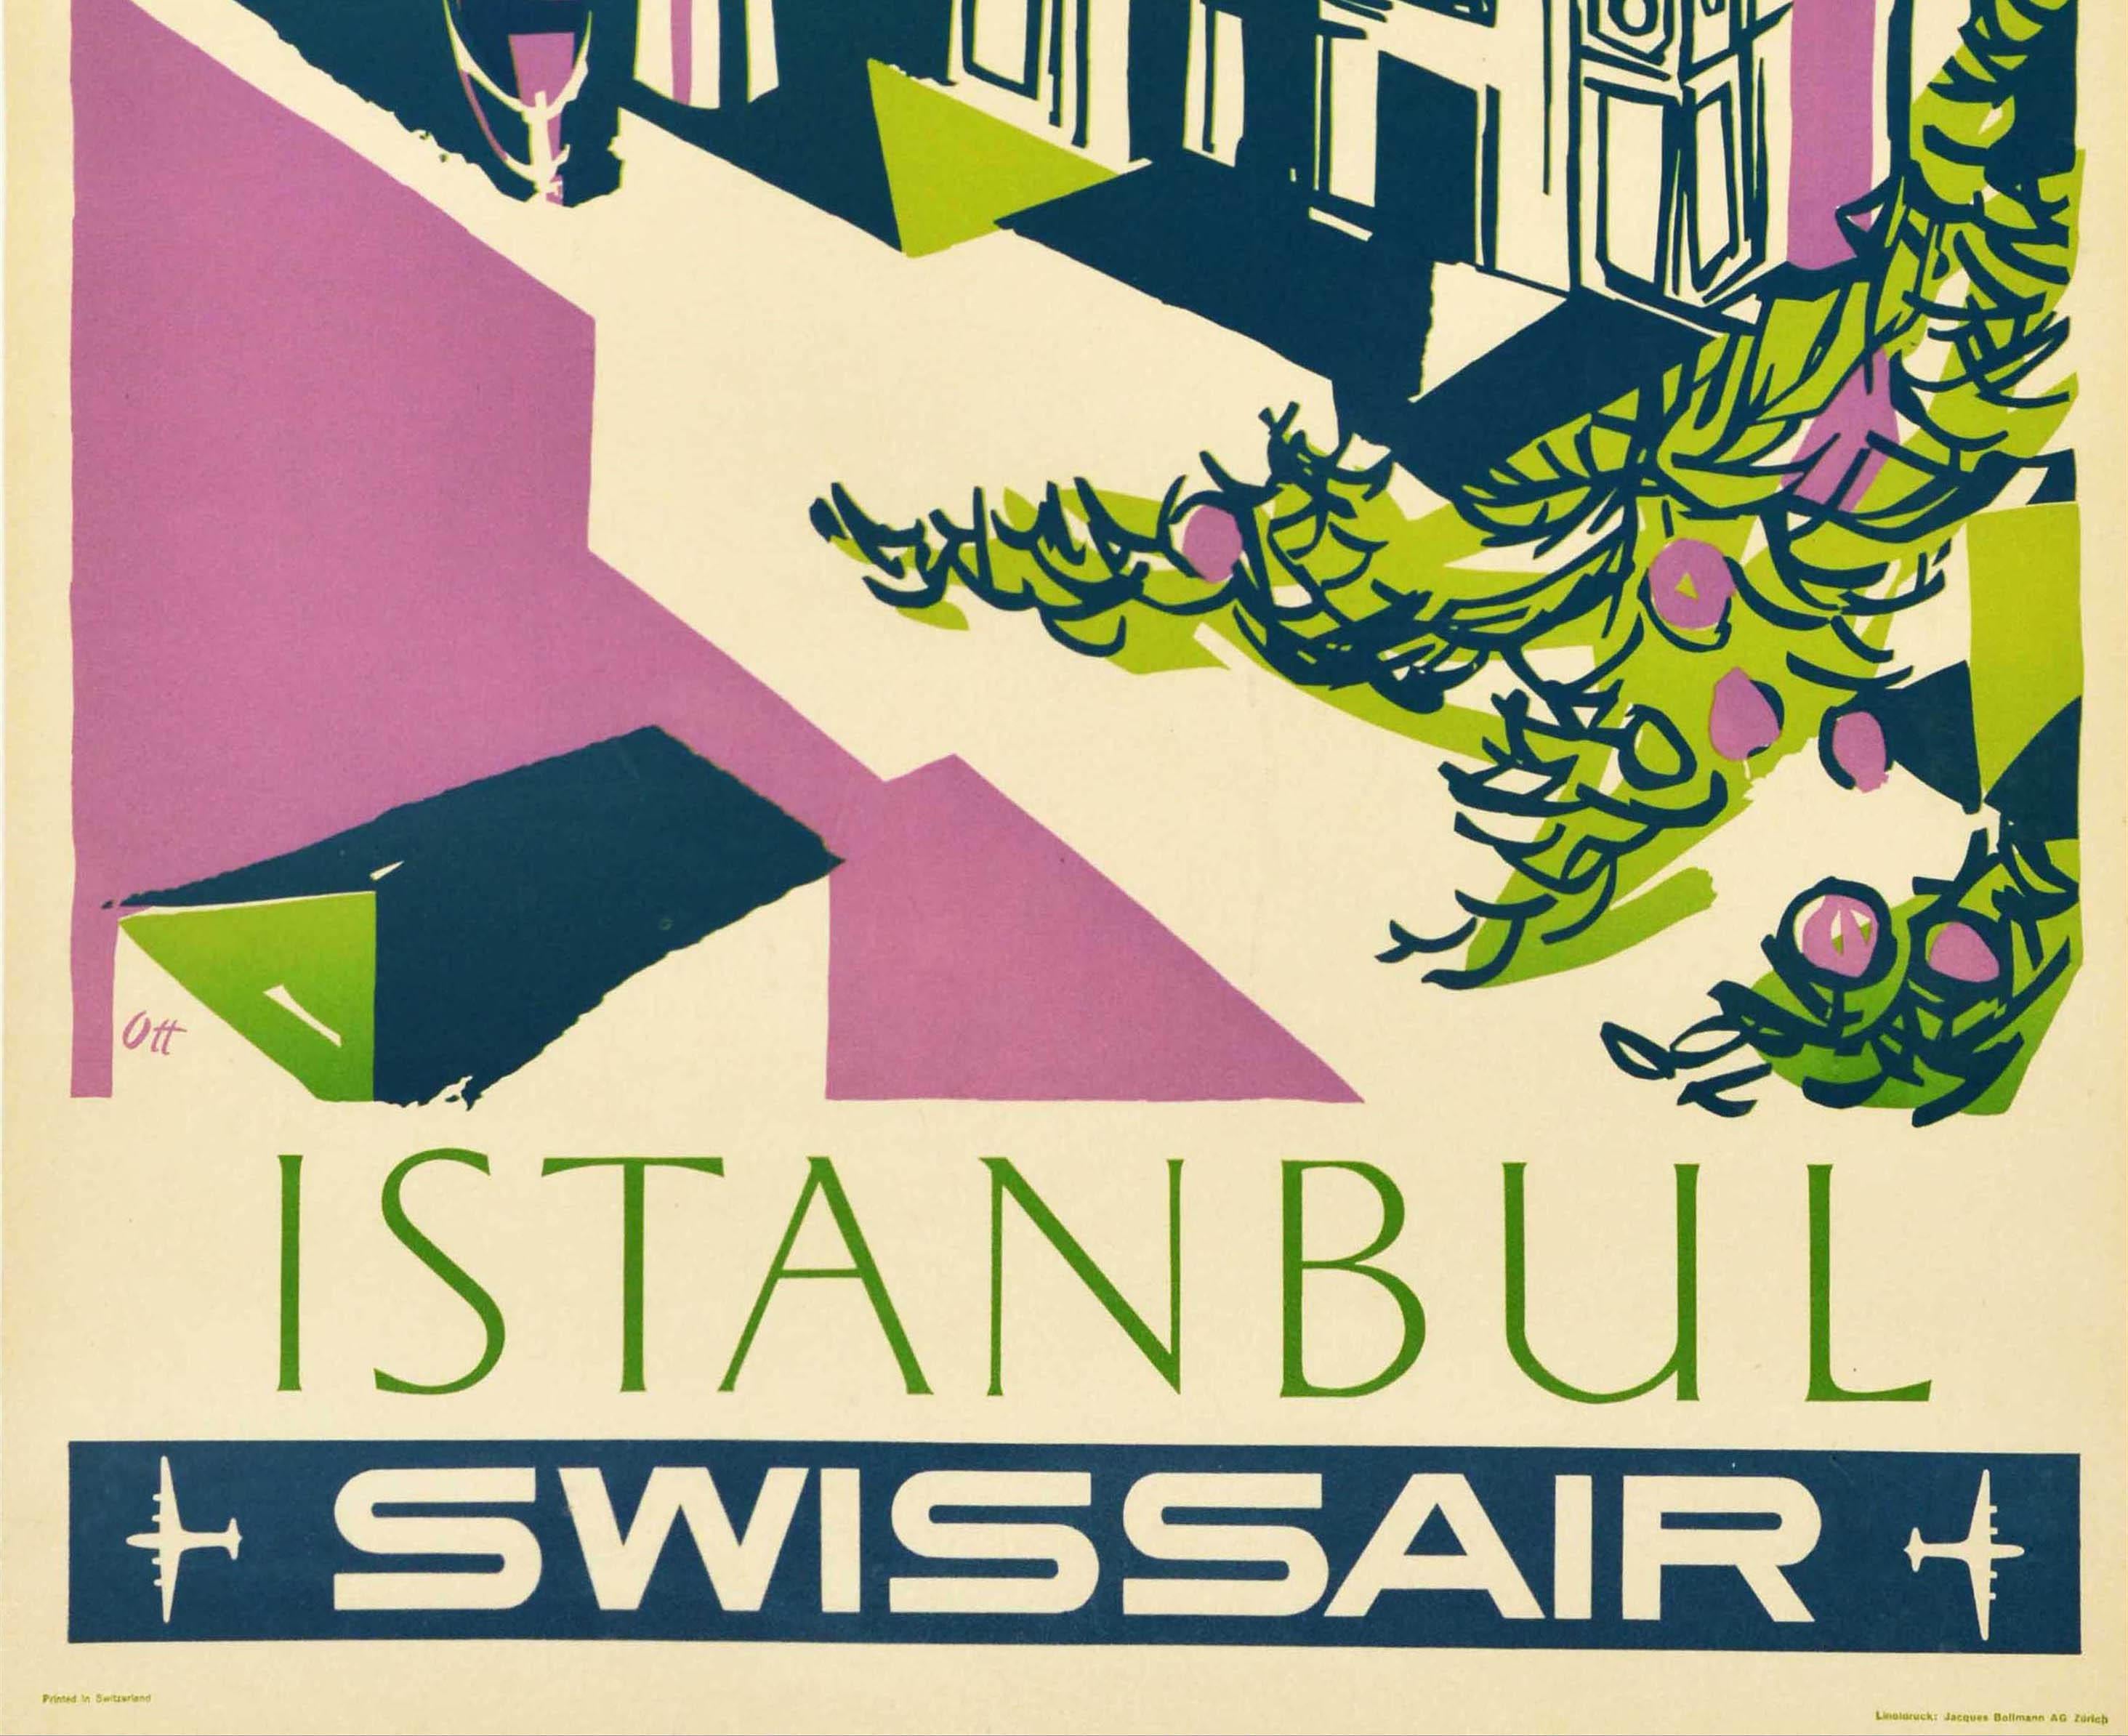 Mid-20th Century Original Vintage Swissair Travel Poster Istanbul Turkey Swissair Airline Mosque